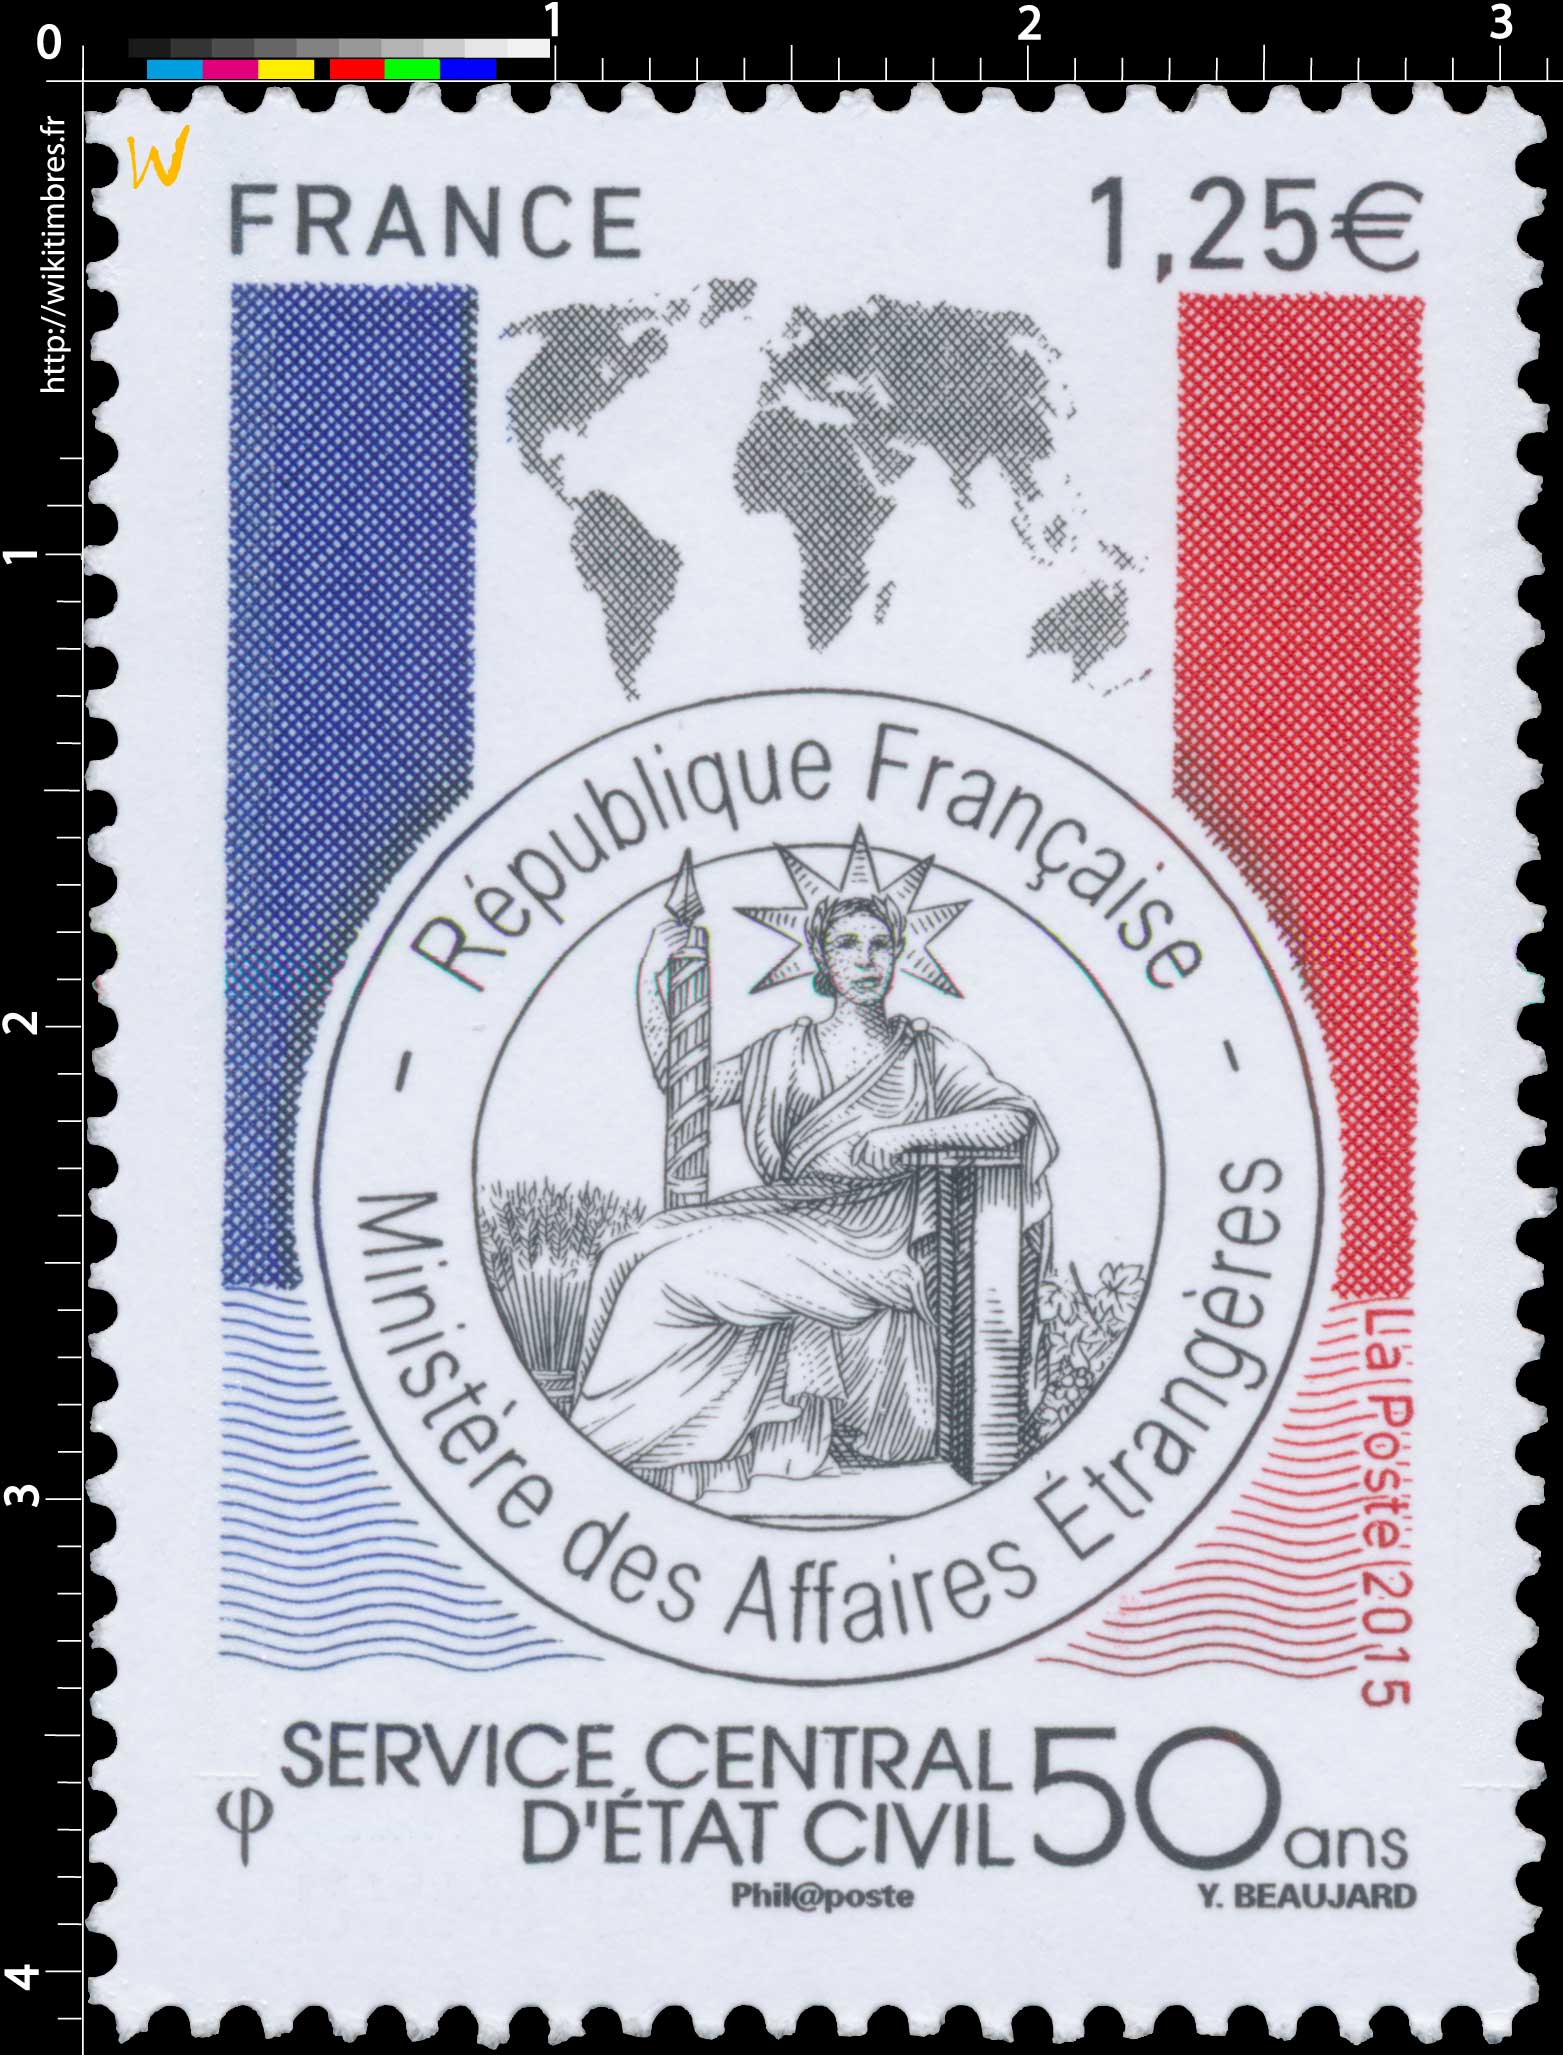 2015 Service Central d'État Civil 50 ans - République Française - Ministère de la justice